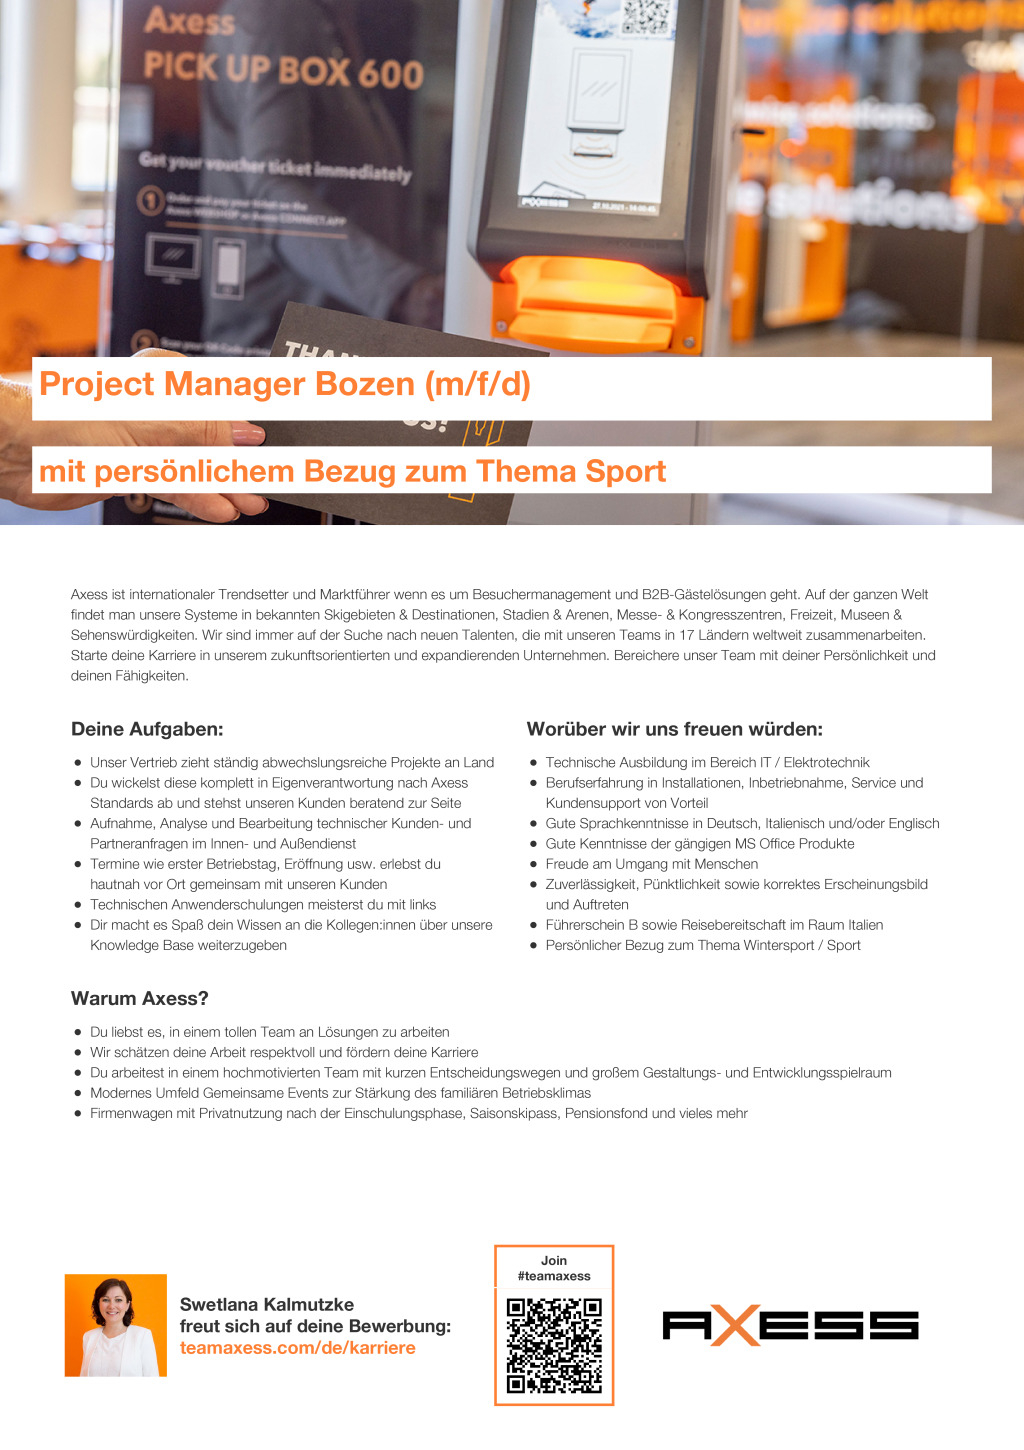 Project Manager Bozen (m/w/d)